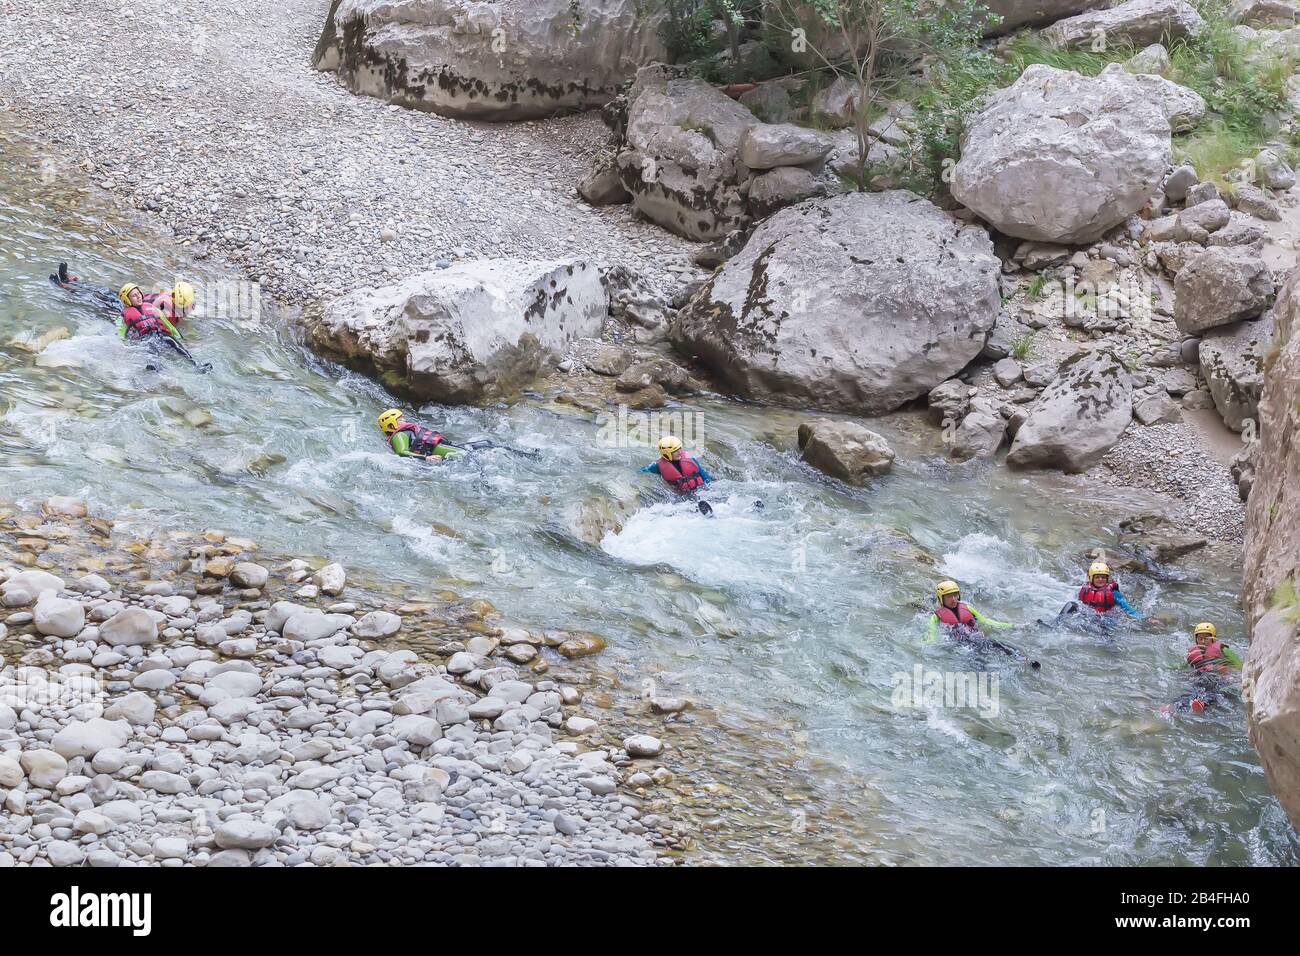 Groupe de personnes canyoning en rivière Verdon, Gorges du Verdon, Alpes de Haute Provence, Provence, France Banque D'Images